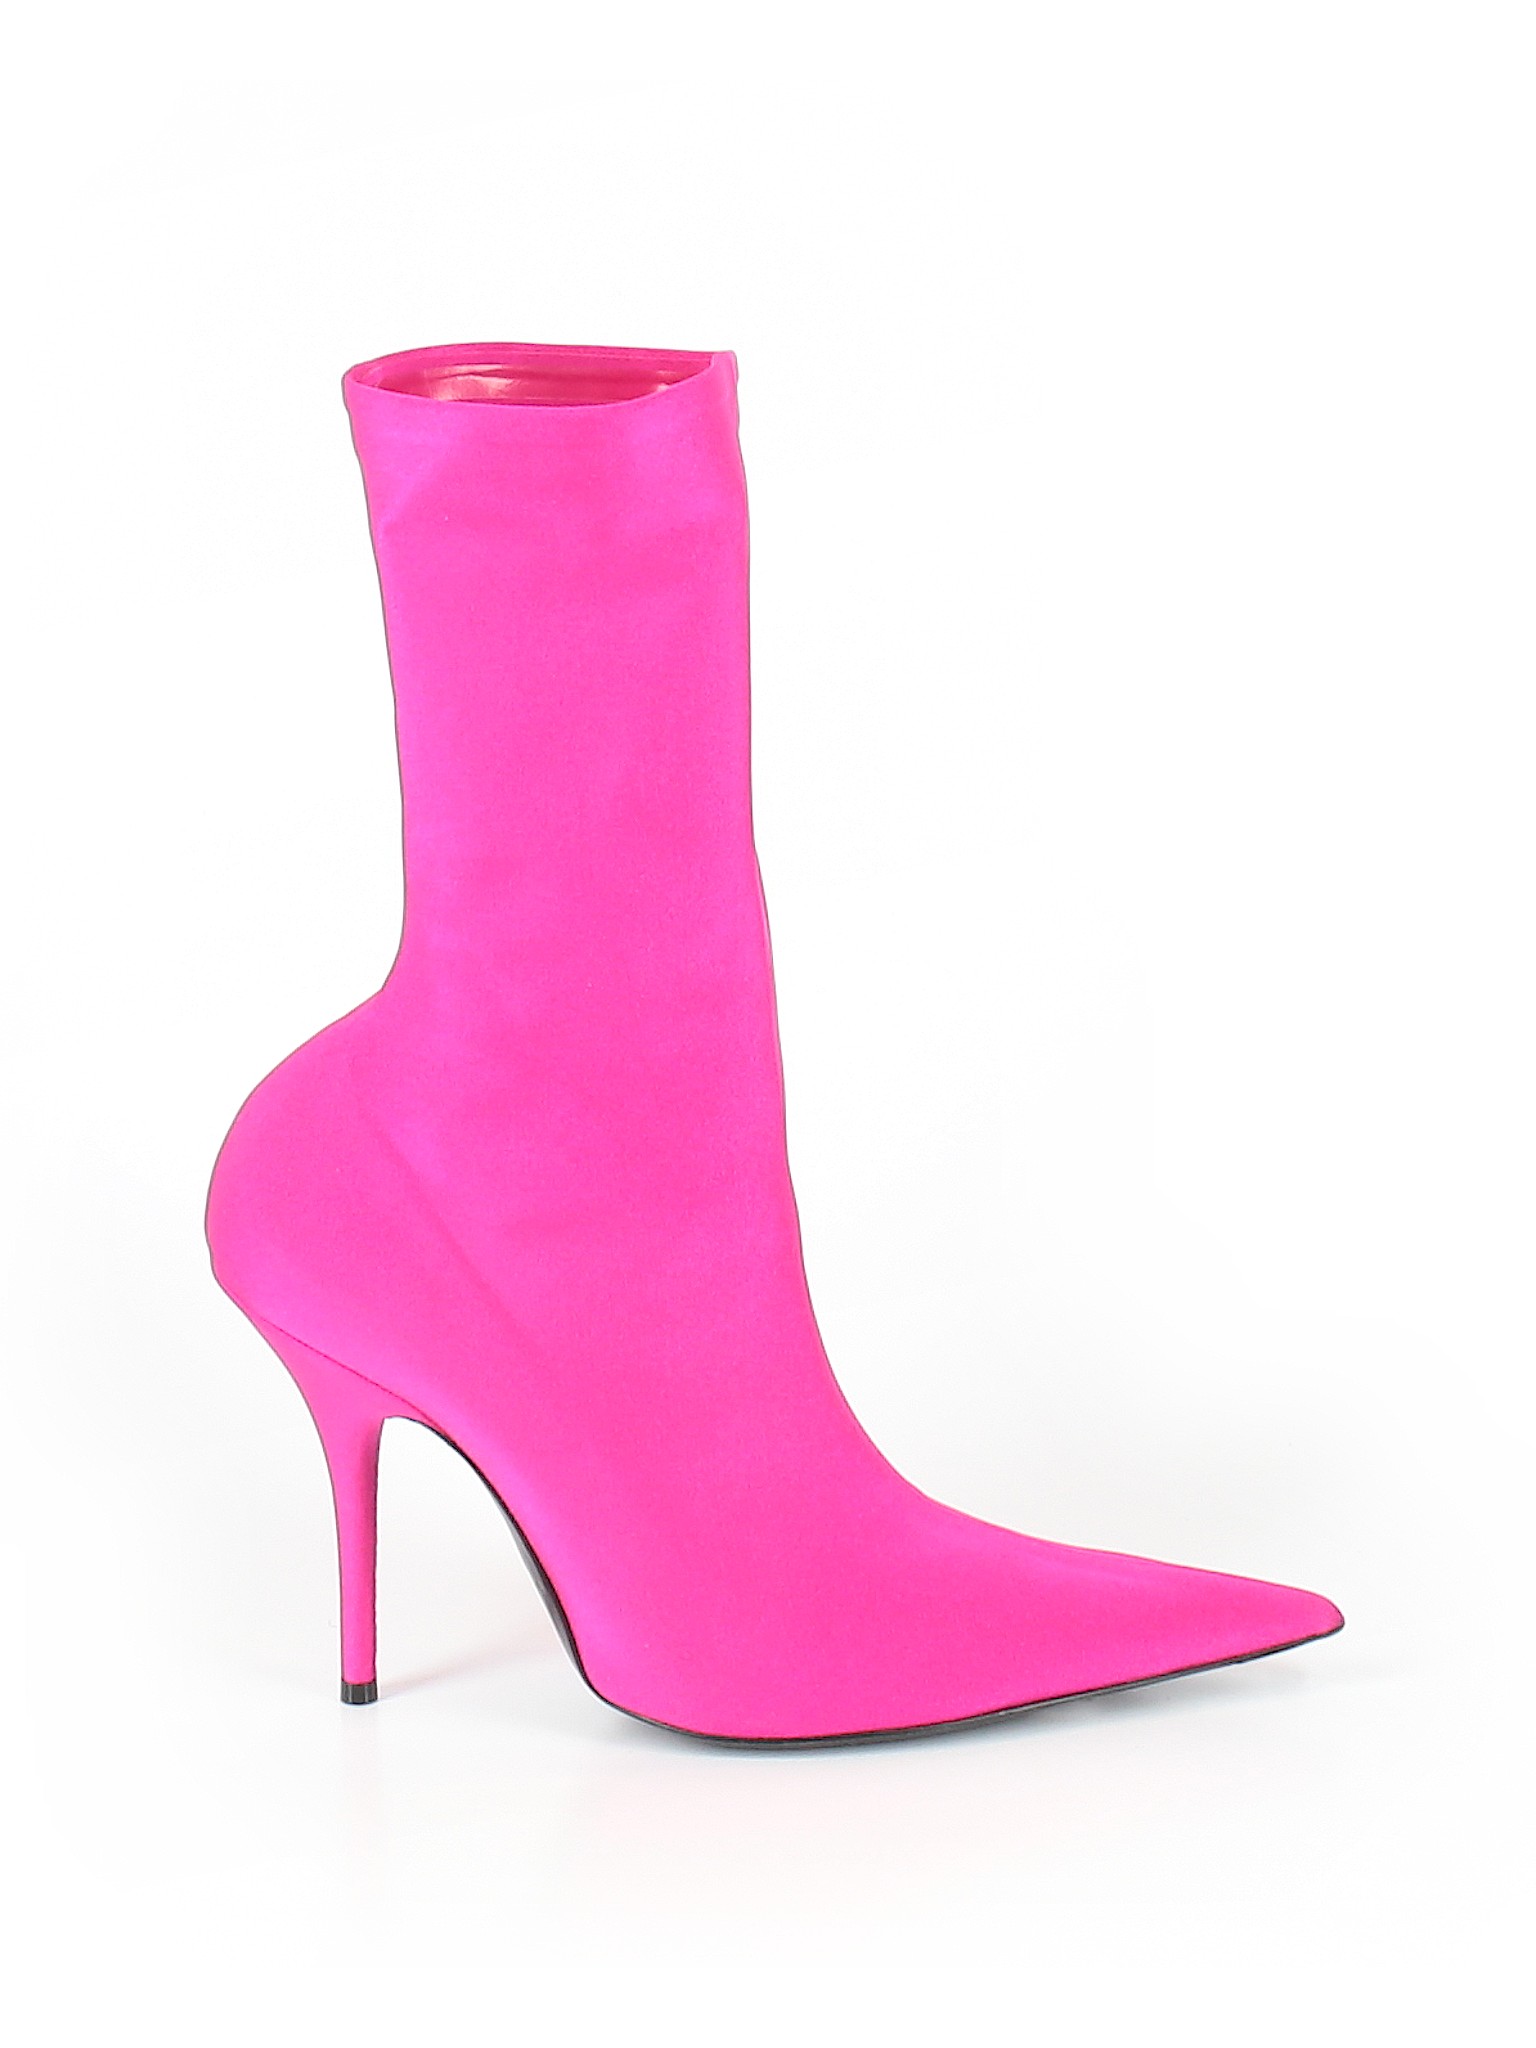 balenciaga shoes women pink